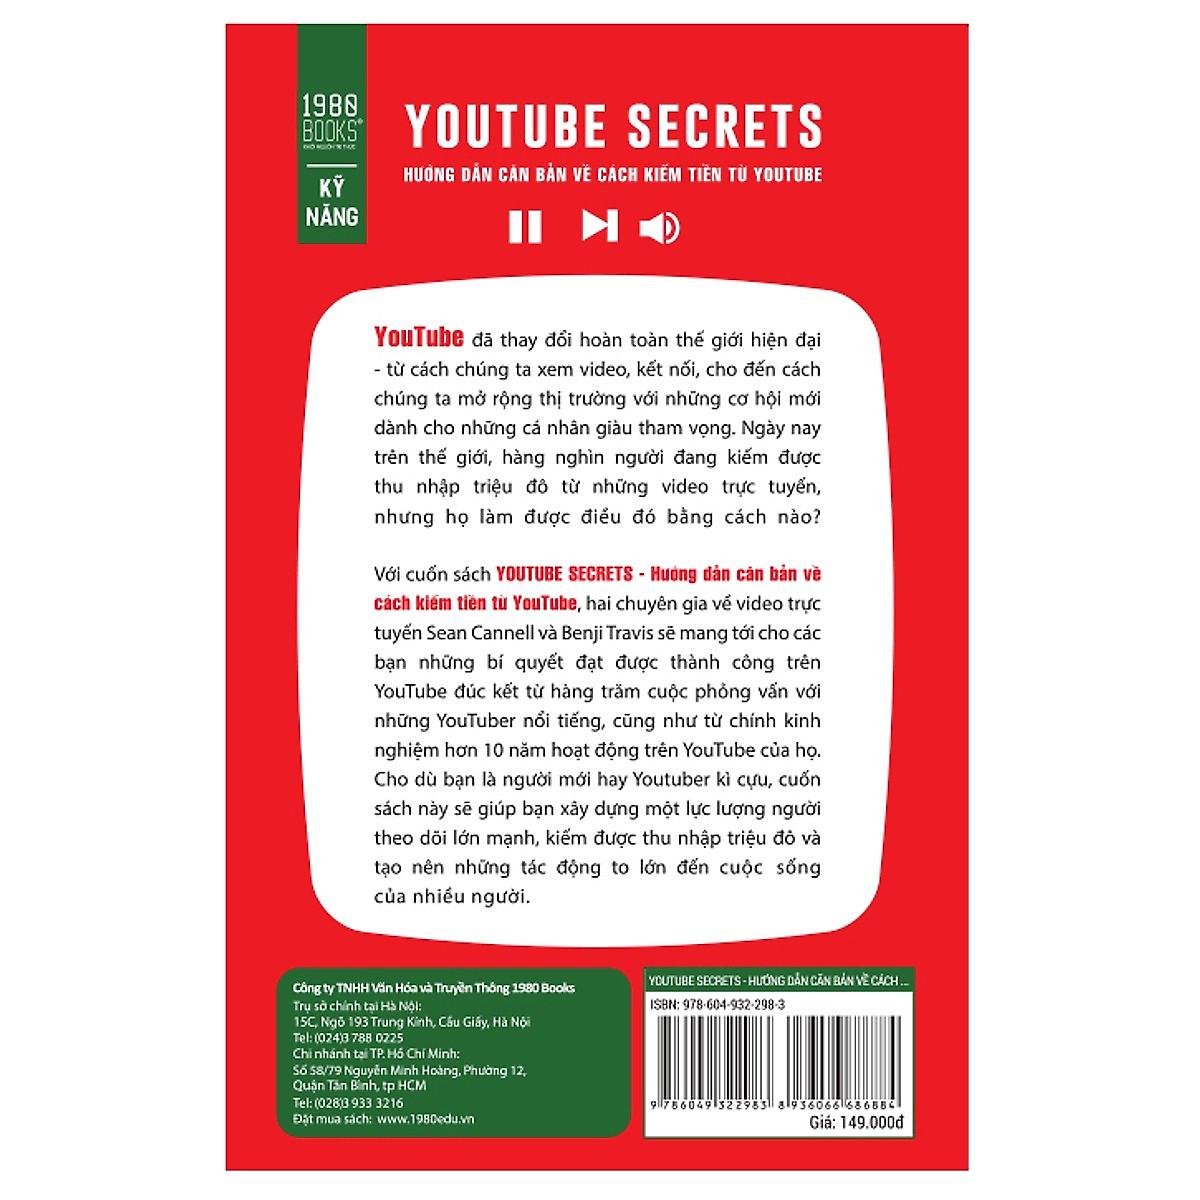 Youtube Secrets - Hướng Dẫn Căn Bản Cách Kiếm Tiền Từ Youtube - Bản Quyền